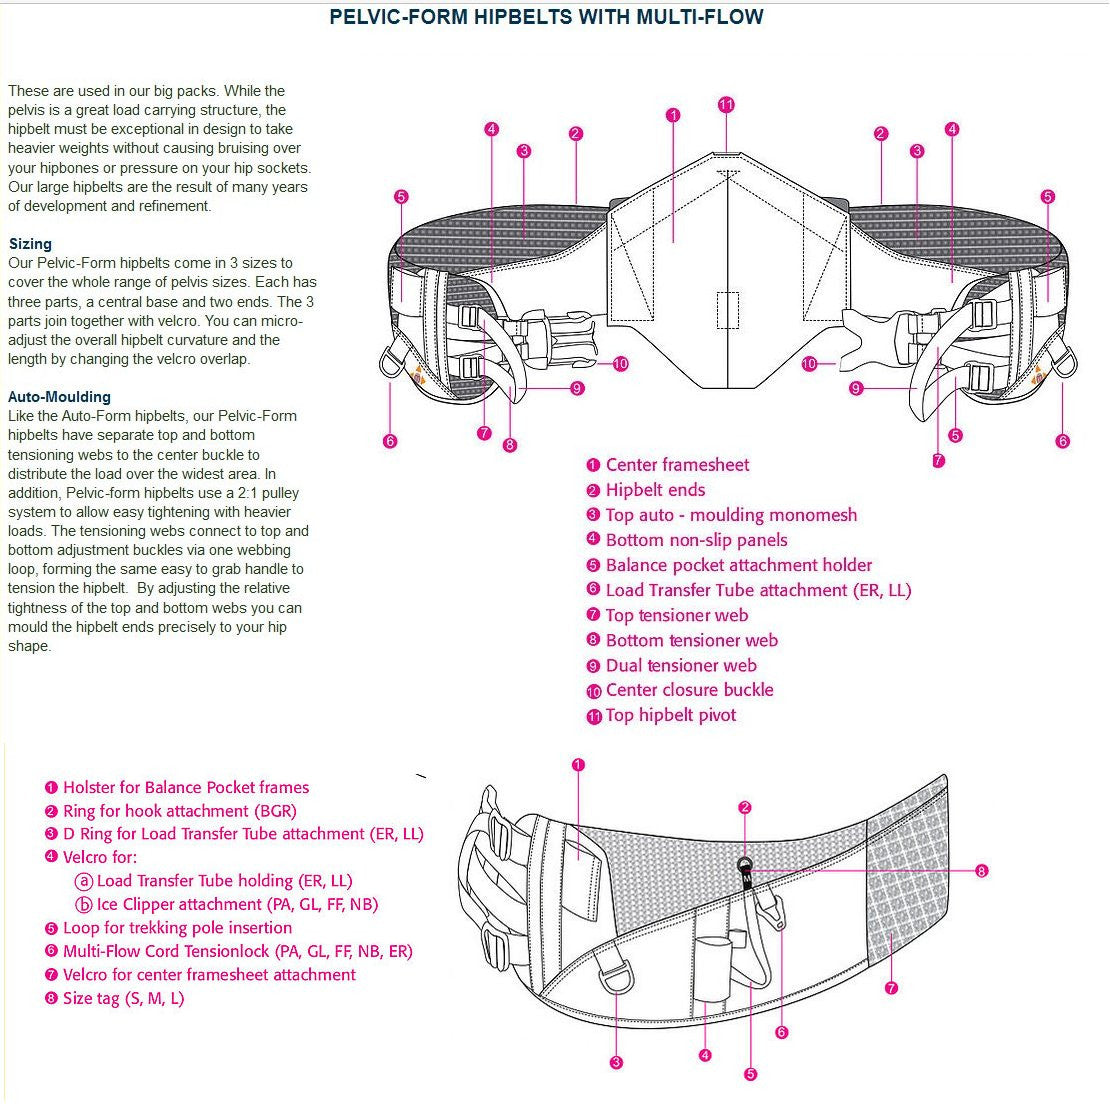 Pelvic-Form Hipbelt design